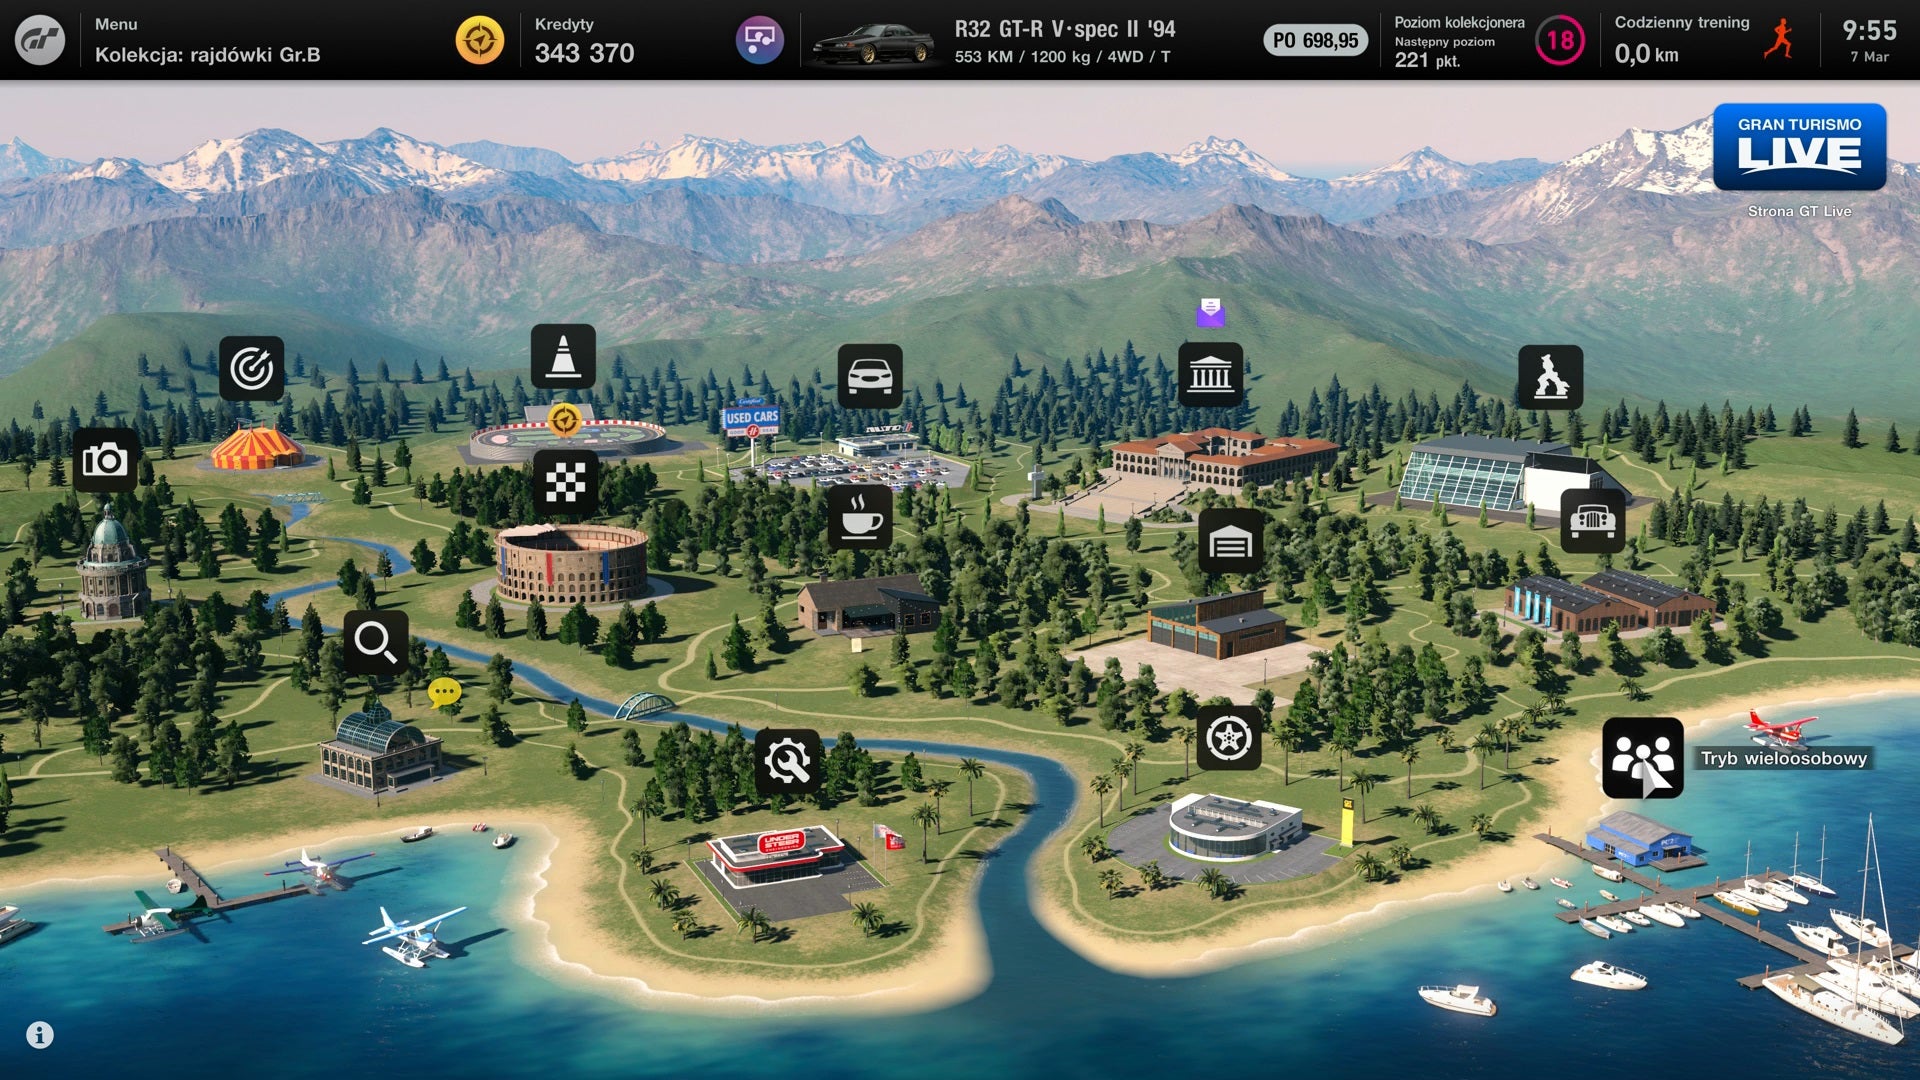 Obrazki dla Gran Turismo 7 - jak odblokować multiplayer